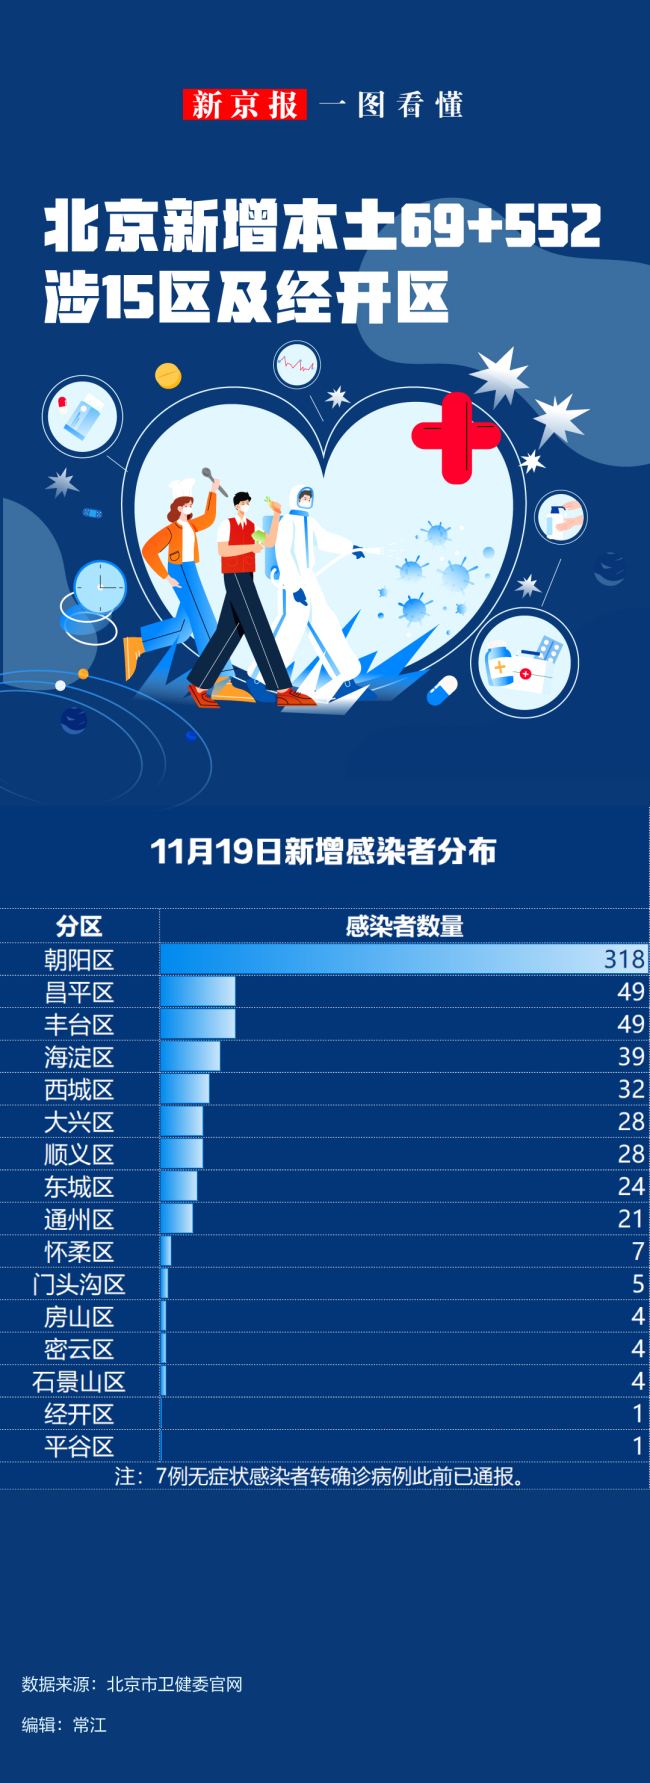 一图看懂丨北京11月19日新增本土感染者“69+552”